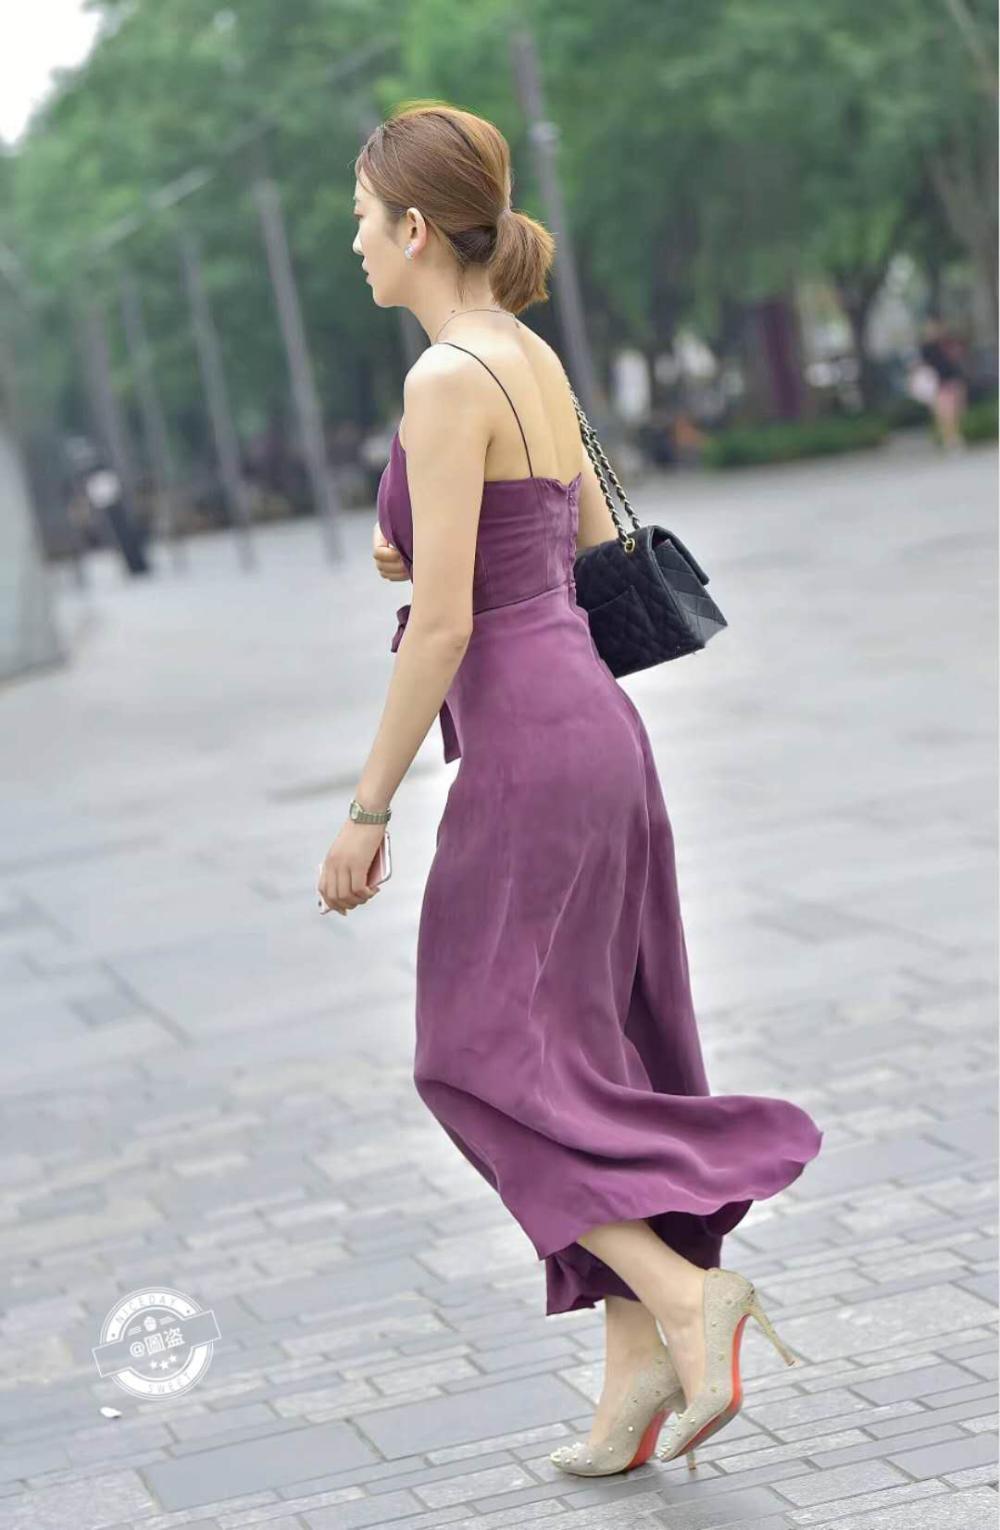 街拍:小姐姐穿紫色连体裤,富有女人味但不招摇过市,怎么穿怎么美!